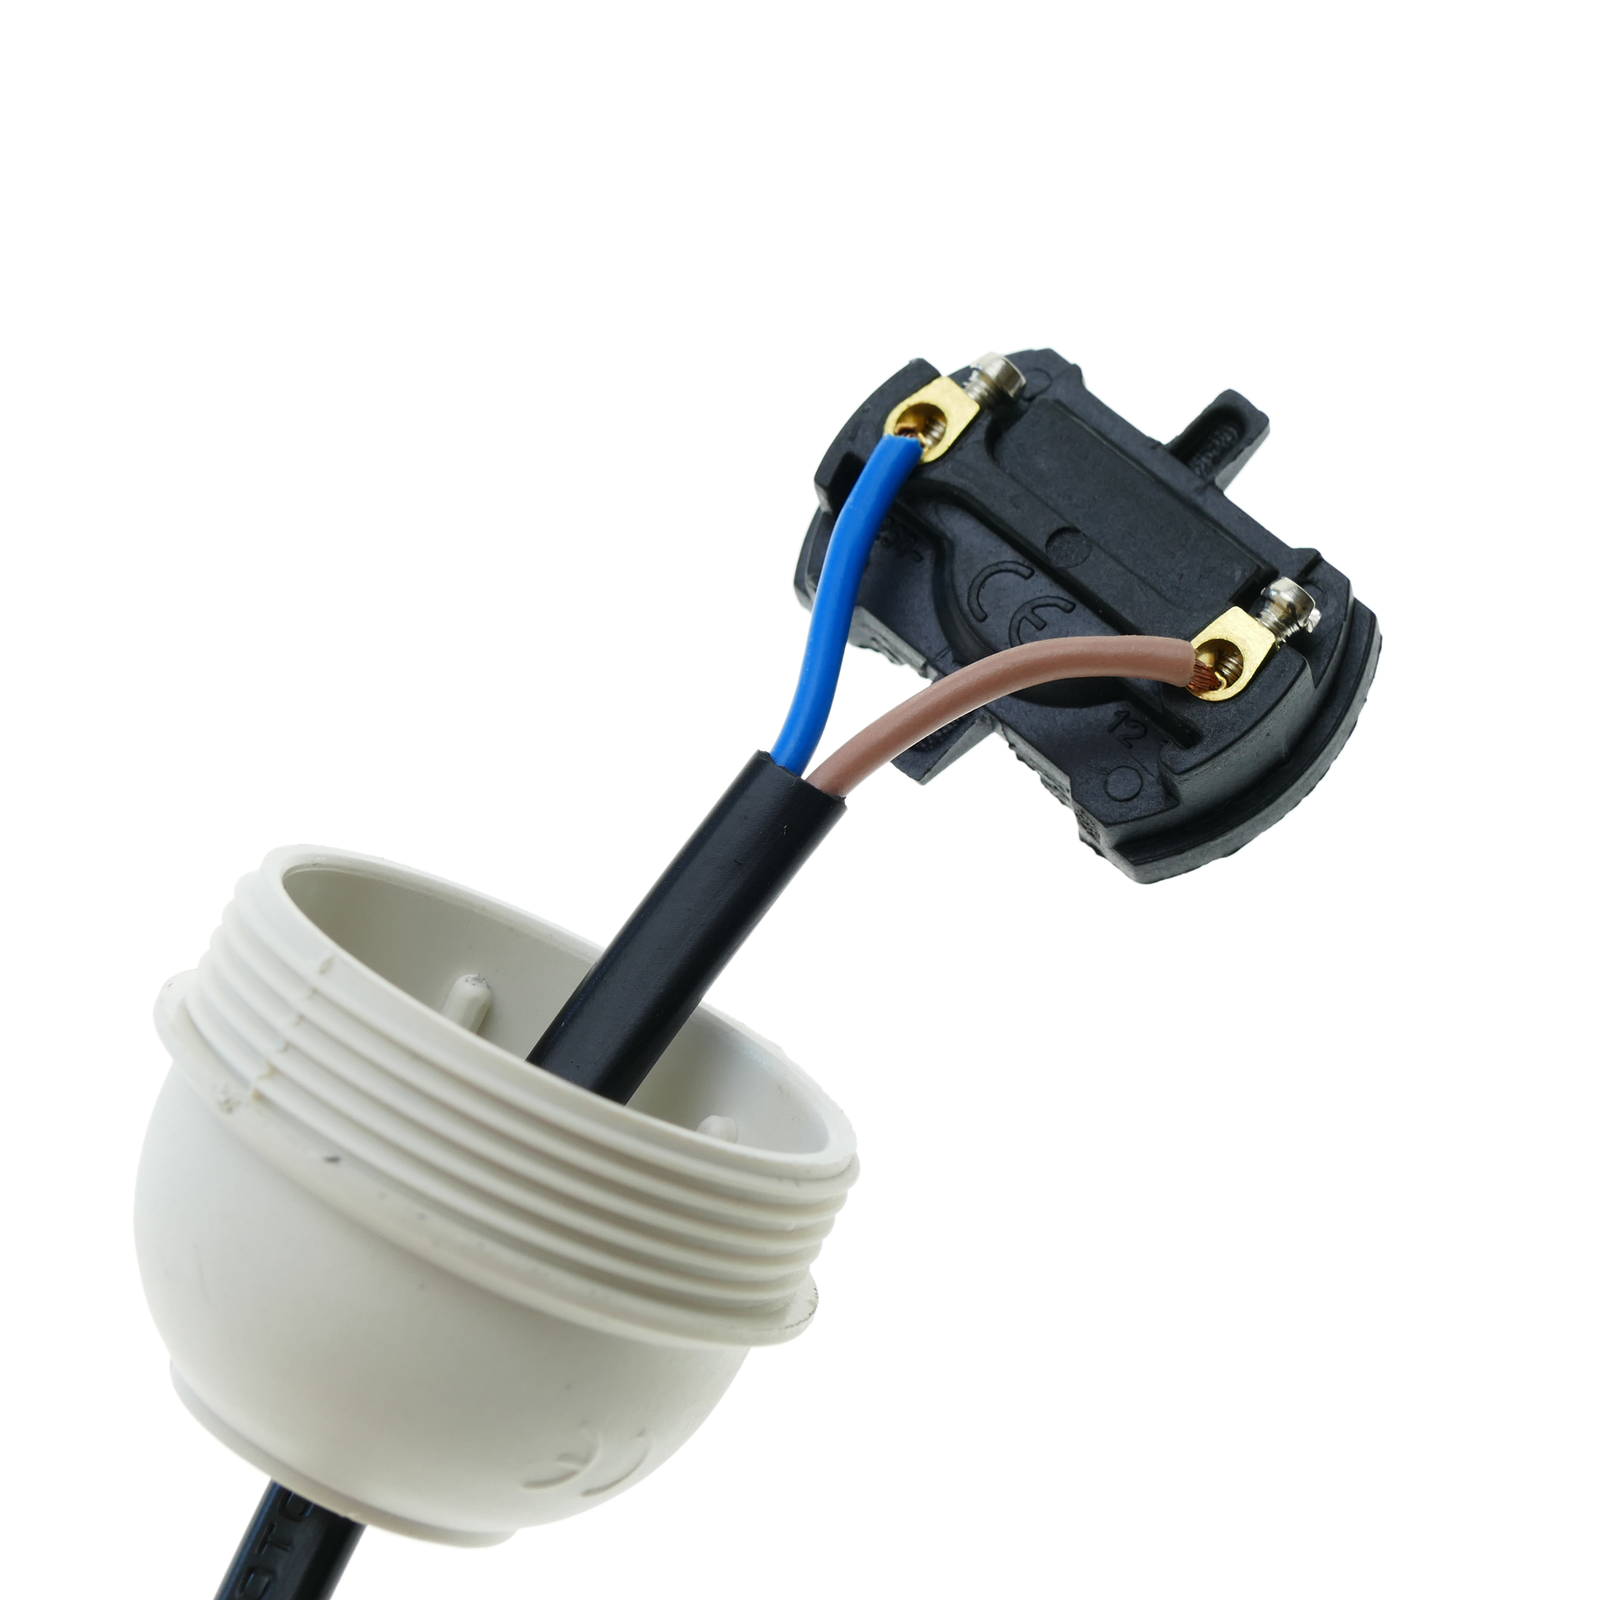 Support de base d'ampoule à douille de Lampe GAESHOW E27 avec